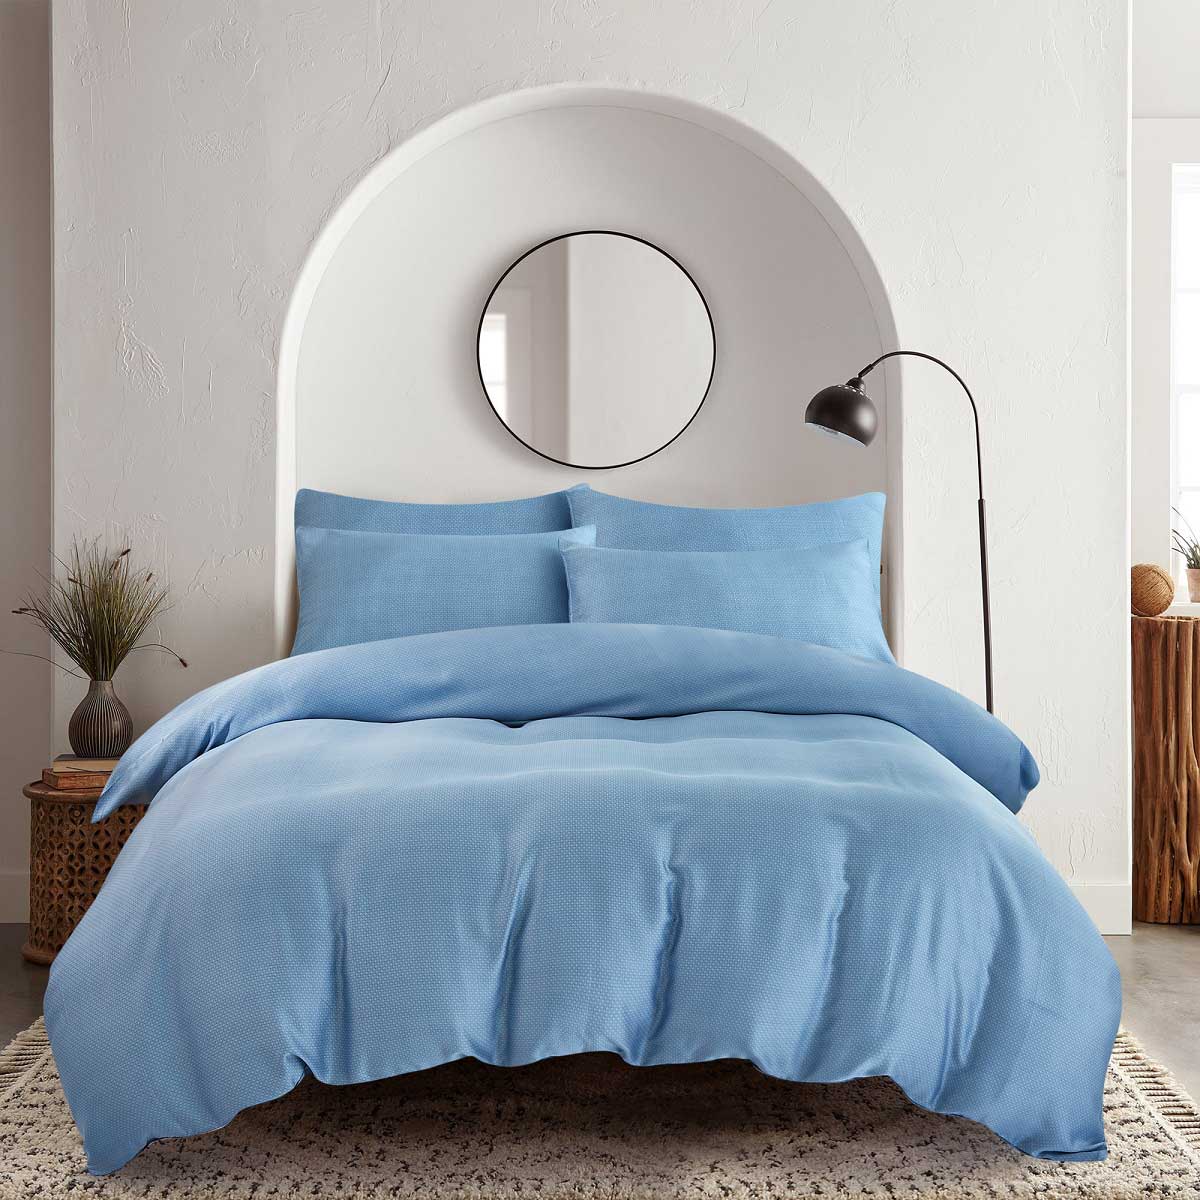 Комплект постельного белья 1,5-спальный Pappel smooth blue Pappel RGT5691B-22/150200S, цвет голубой RGT5691B-22/150200S - фото 1